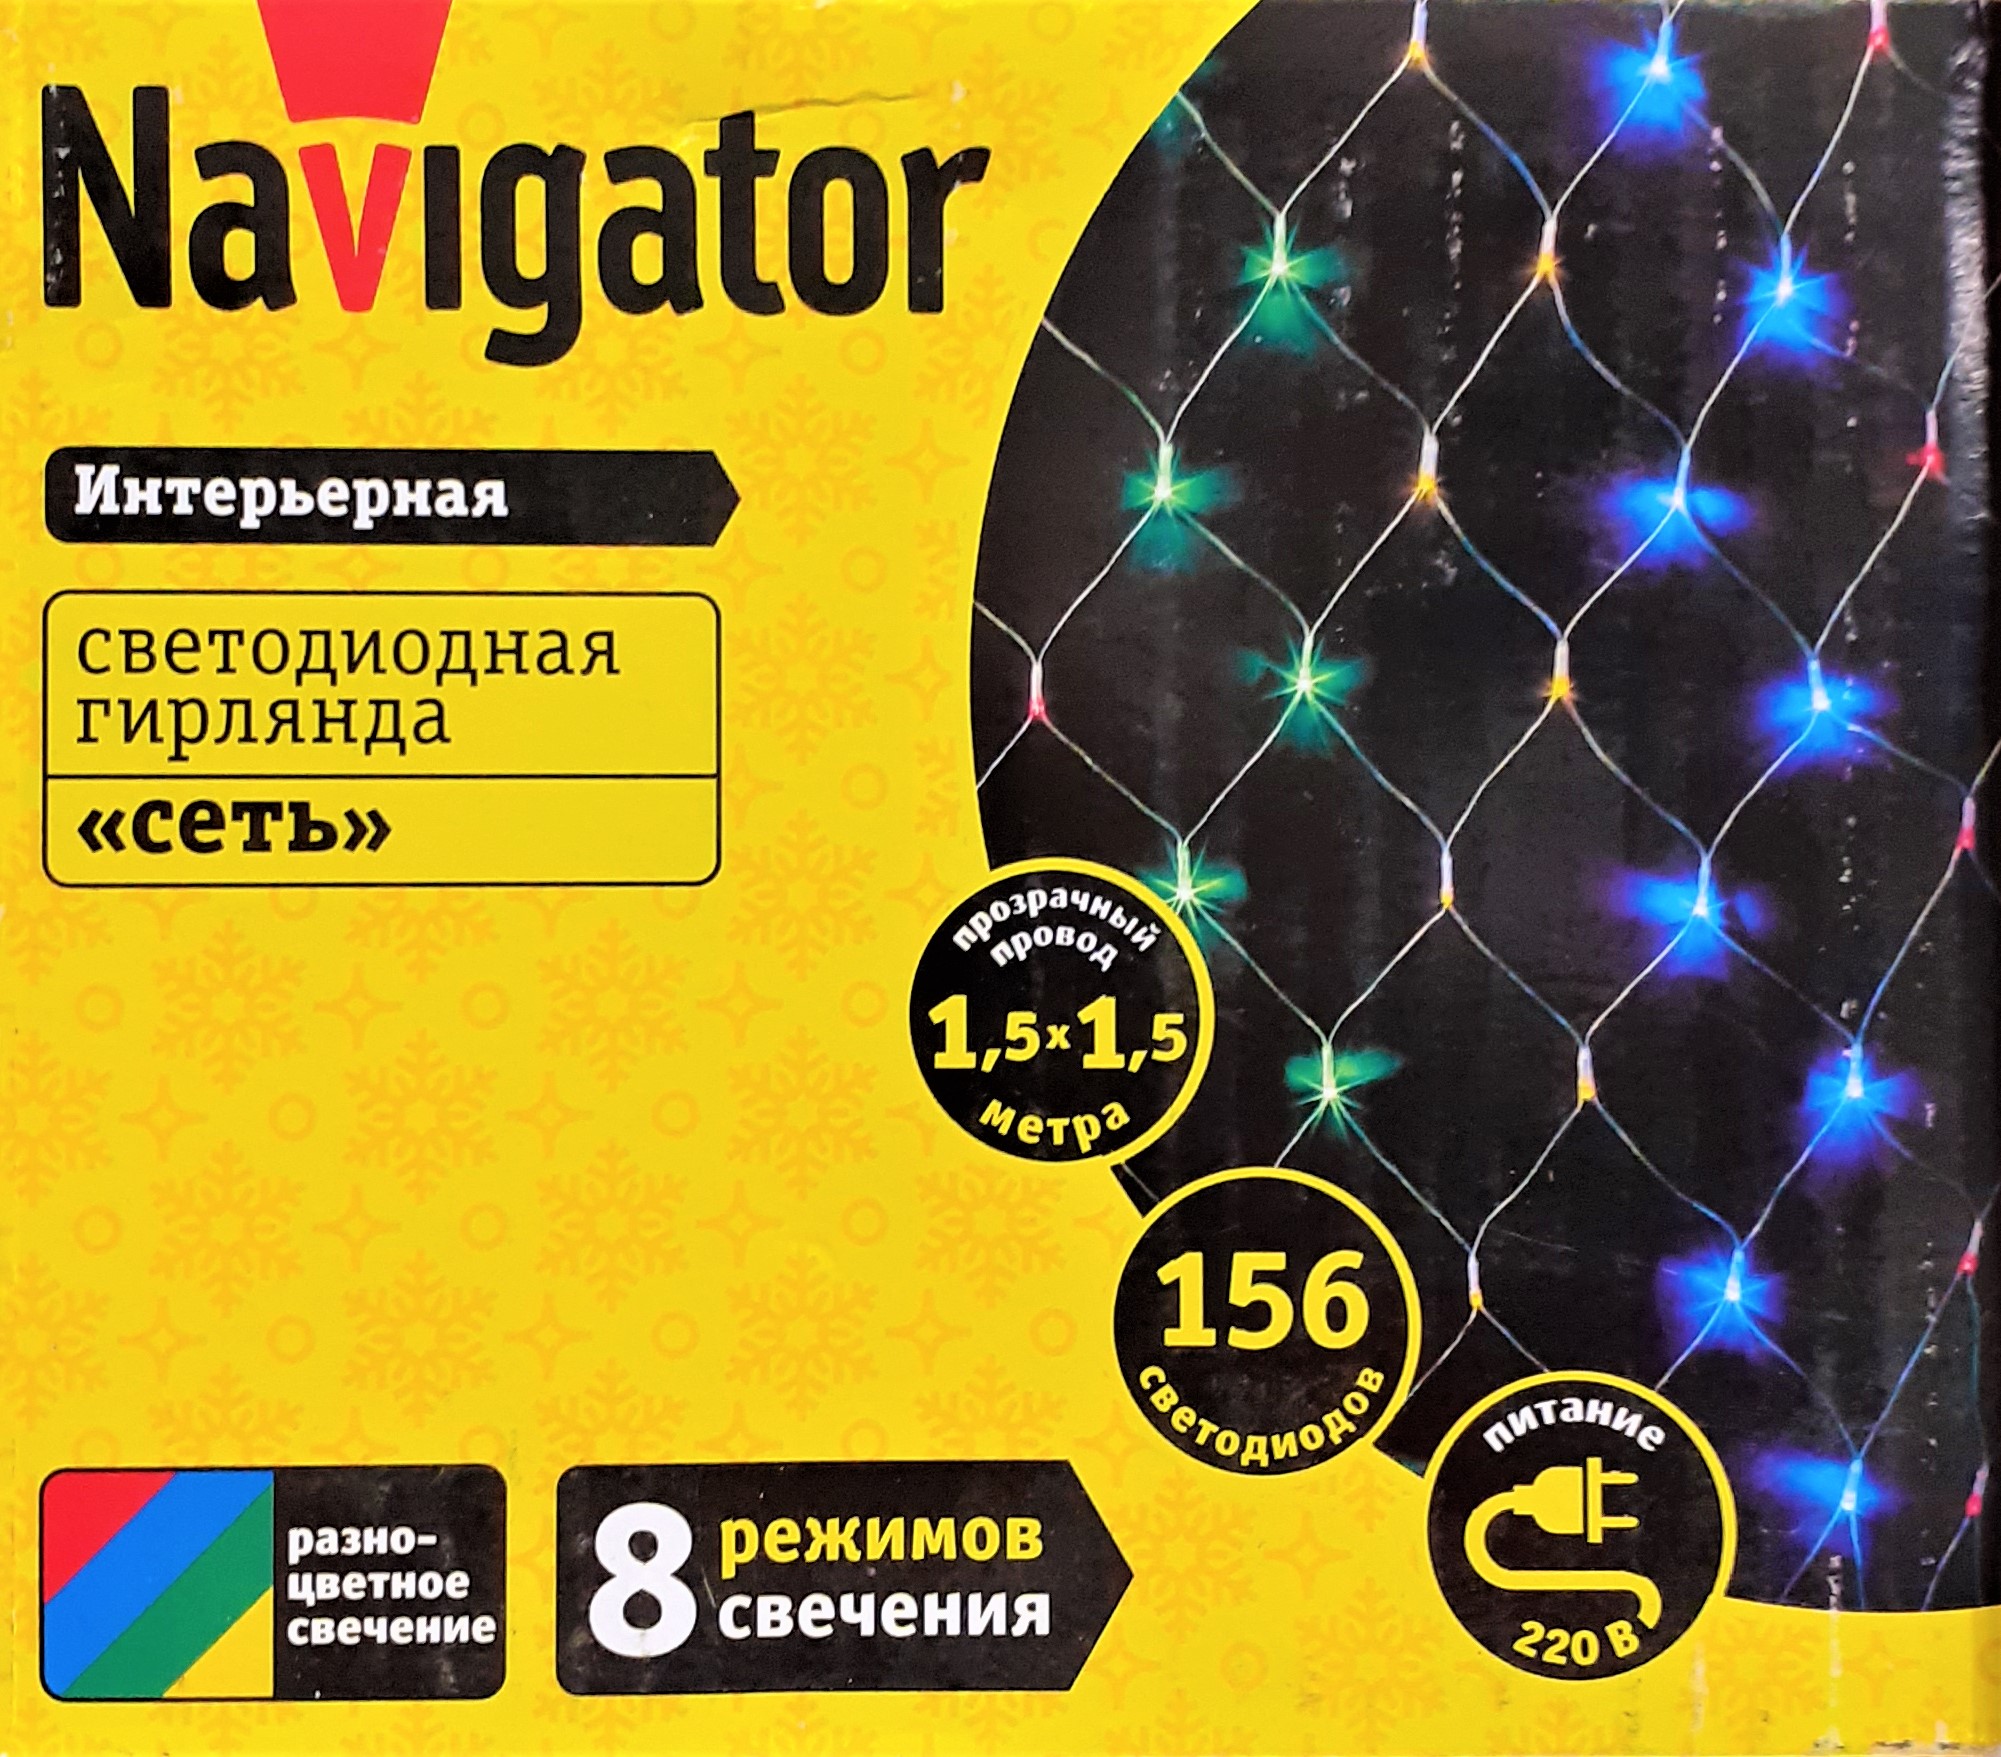 Электрогирлянда-занавес интерьерная Navigator светодиодная, разноцветная, 156 ламп, 8 режимов, 1.5*1.5 м ngf-n01-156rgby-12-1.5x1.5m-230-tr-ip 61845